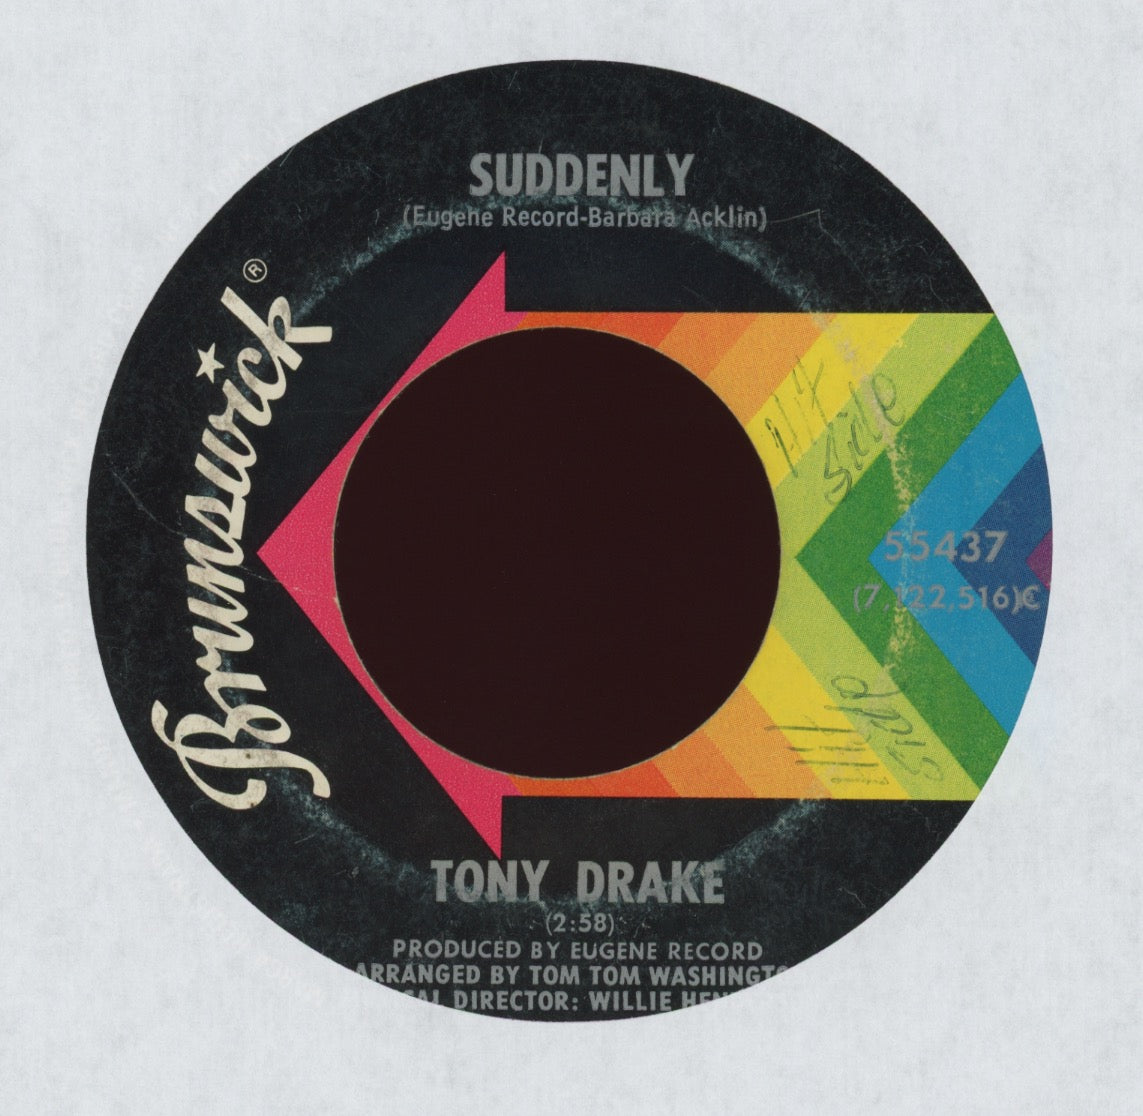 Tony Drake - Suddenly on Brunswick Rare Stock Copy